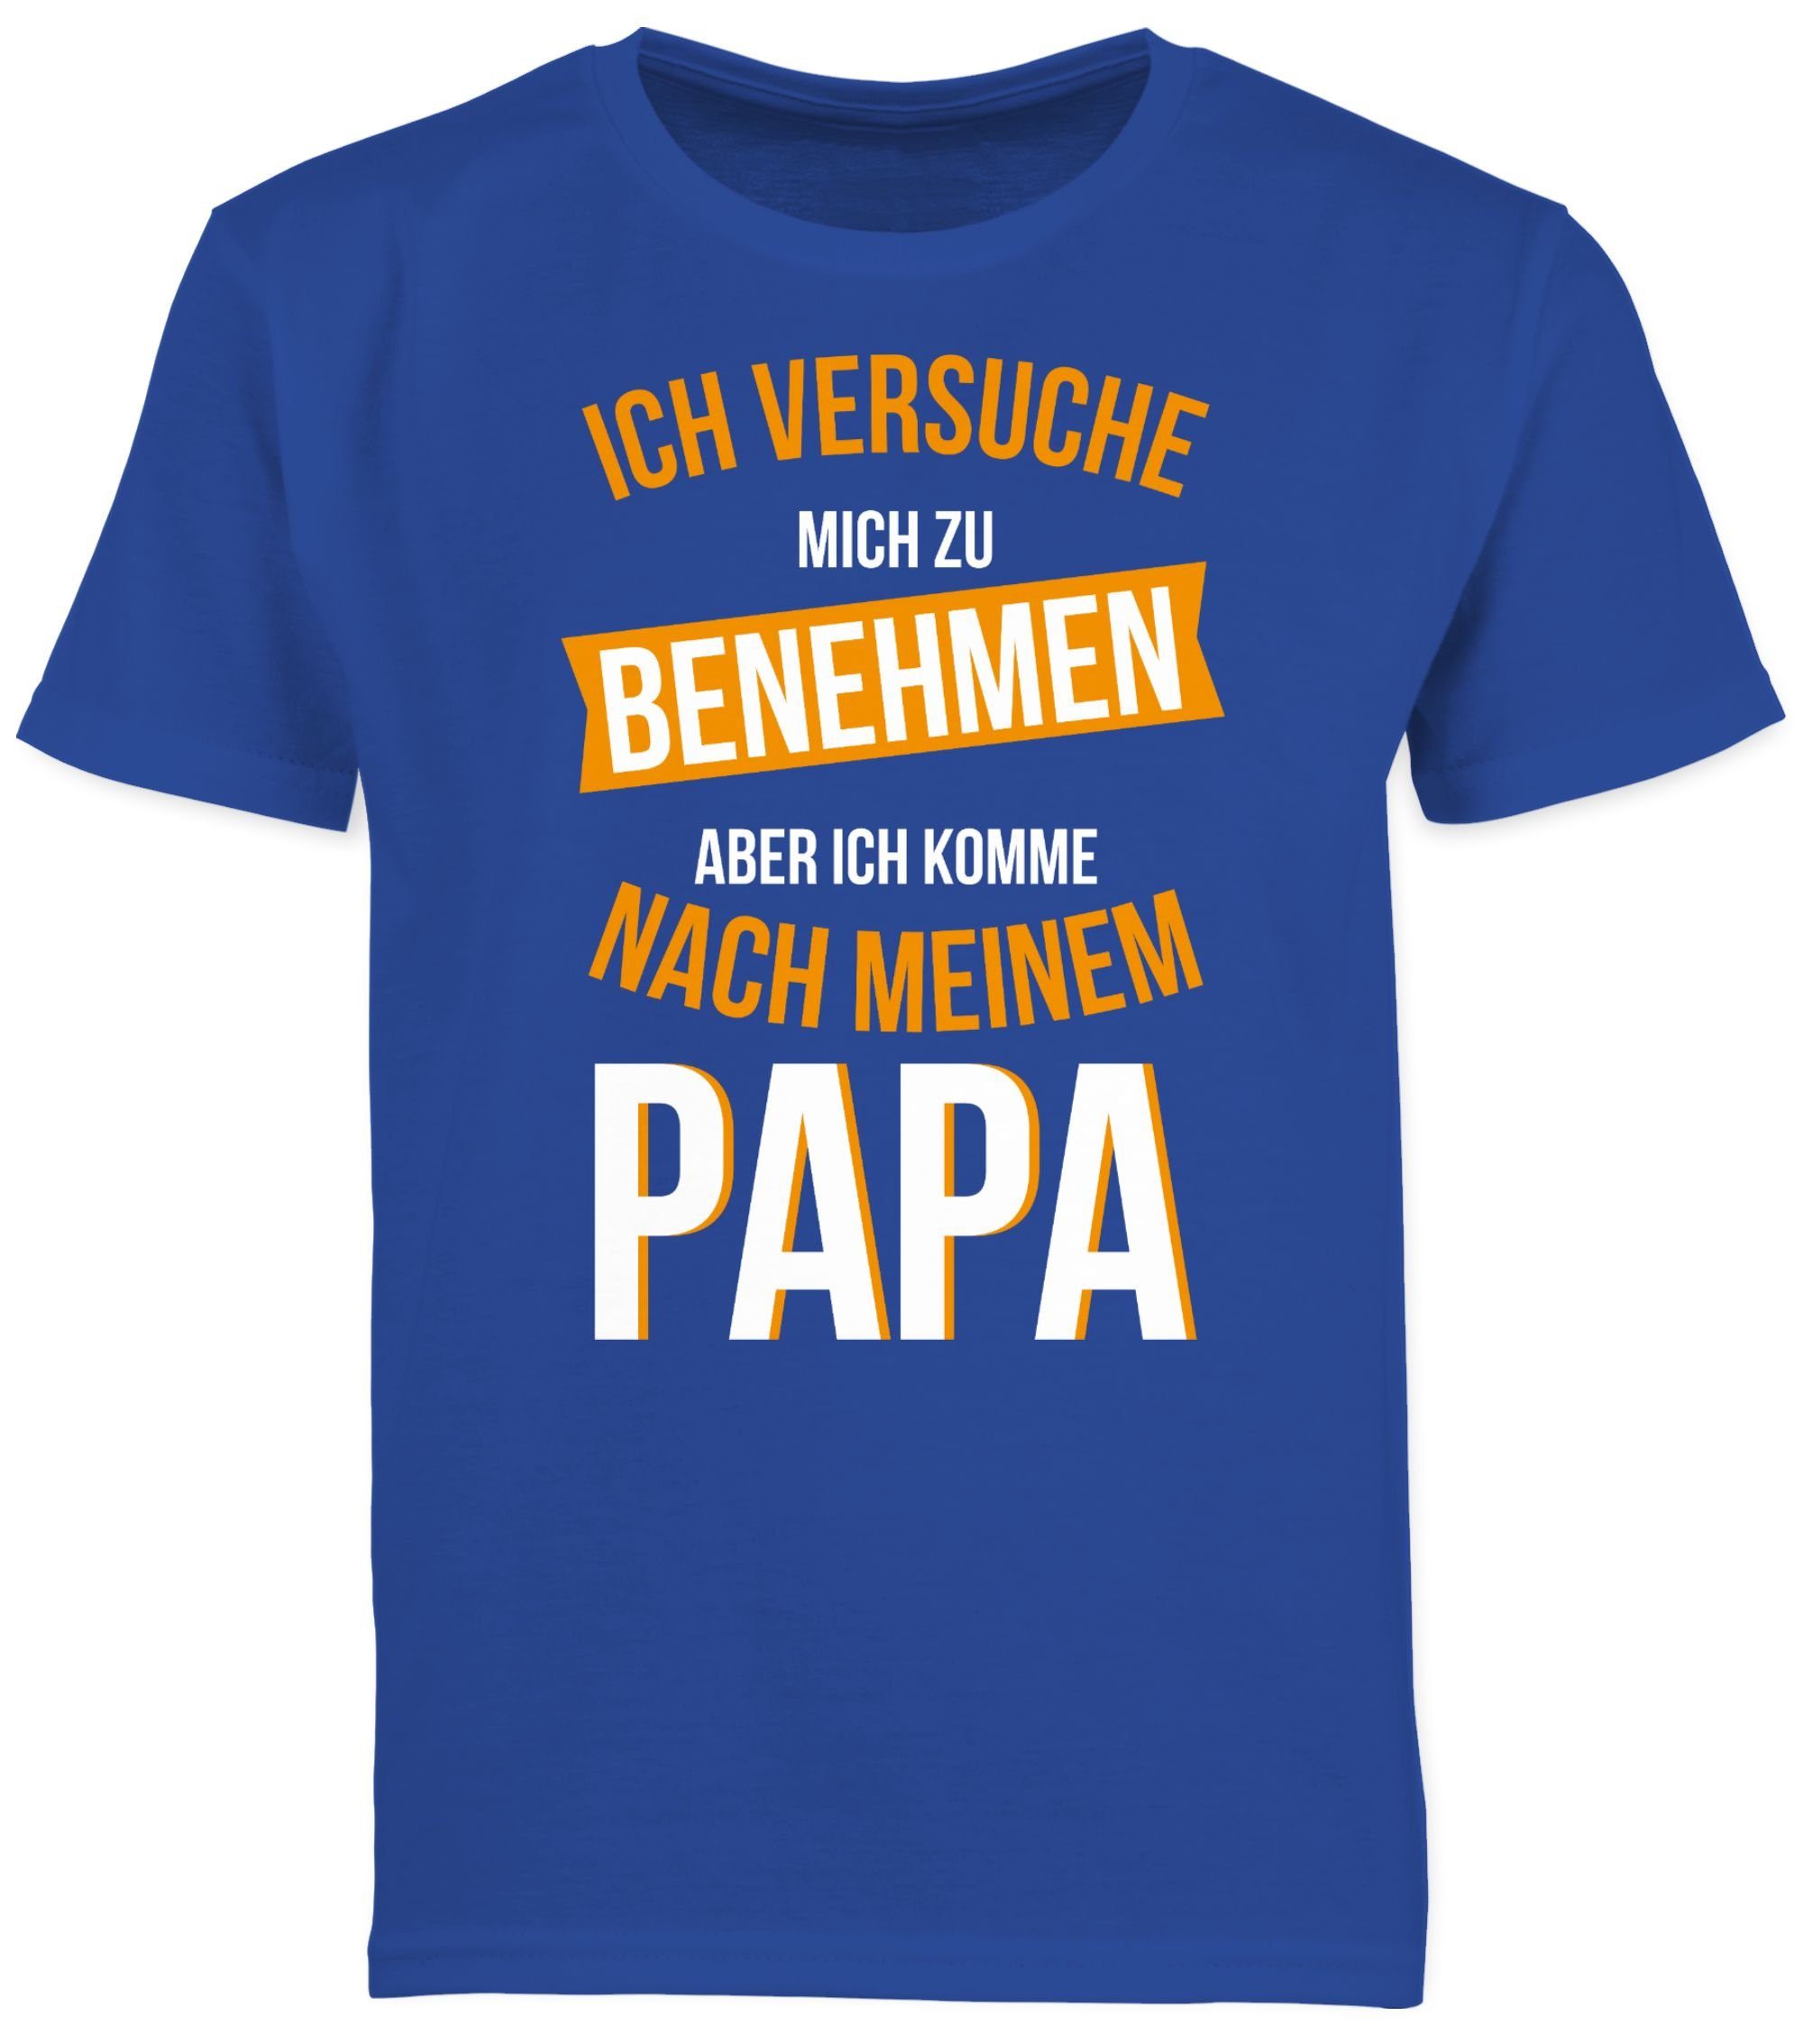 Shirtracer T-Shirt Versuche Kinder Statement Sprüche Papa Royalblau nach komme benehmen mich zu 2